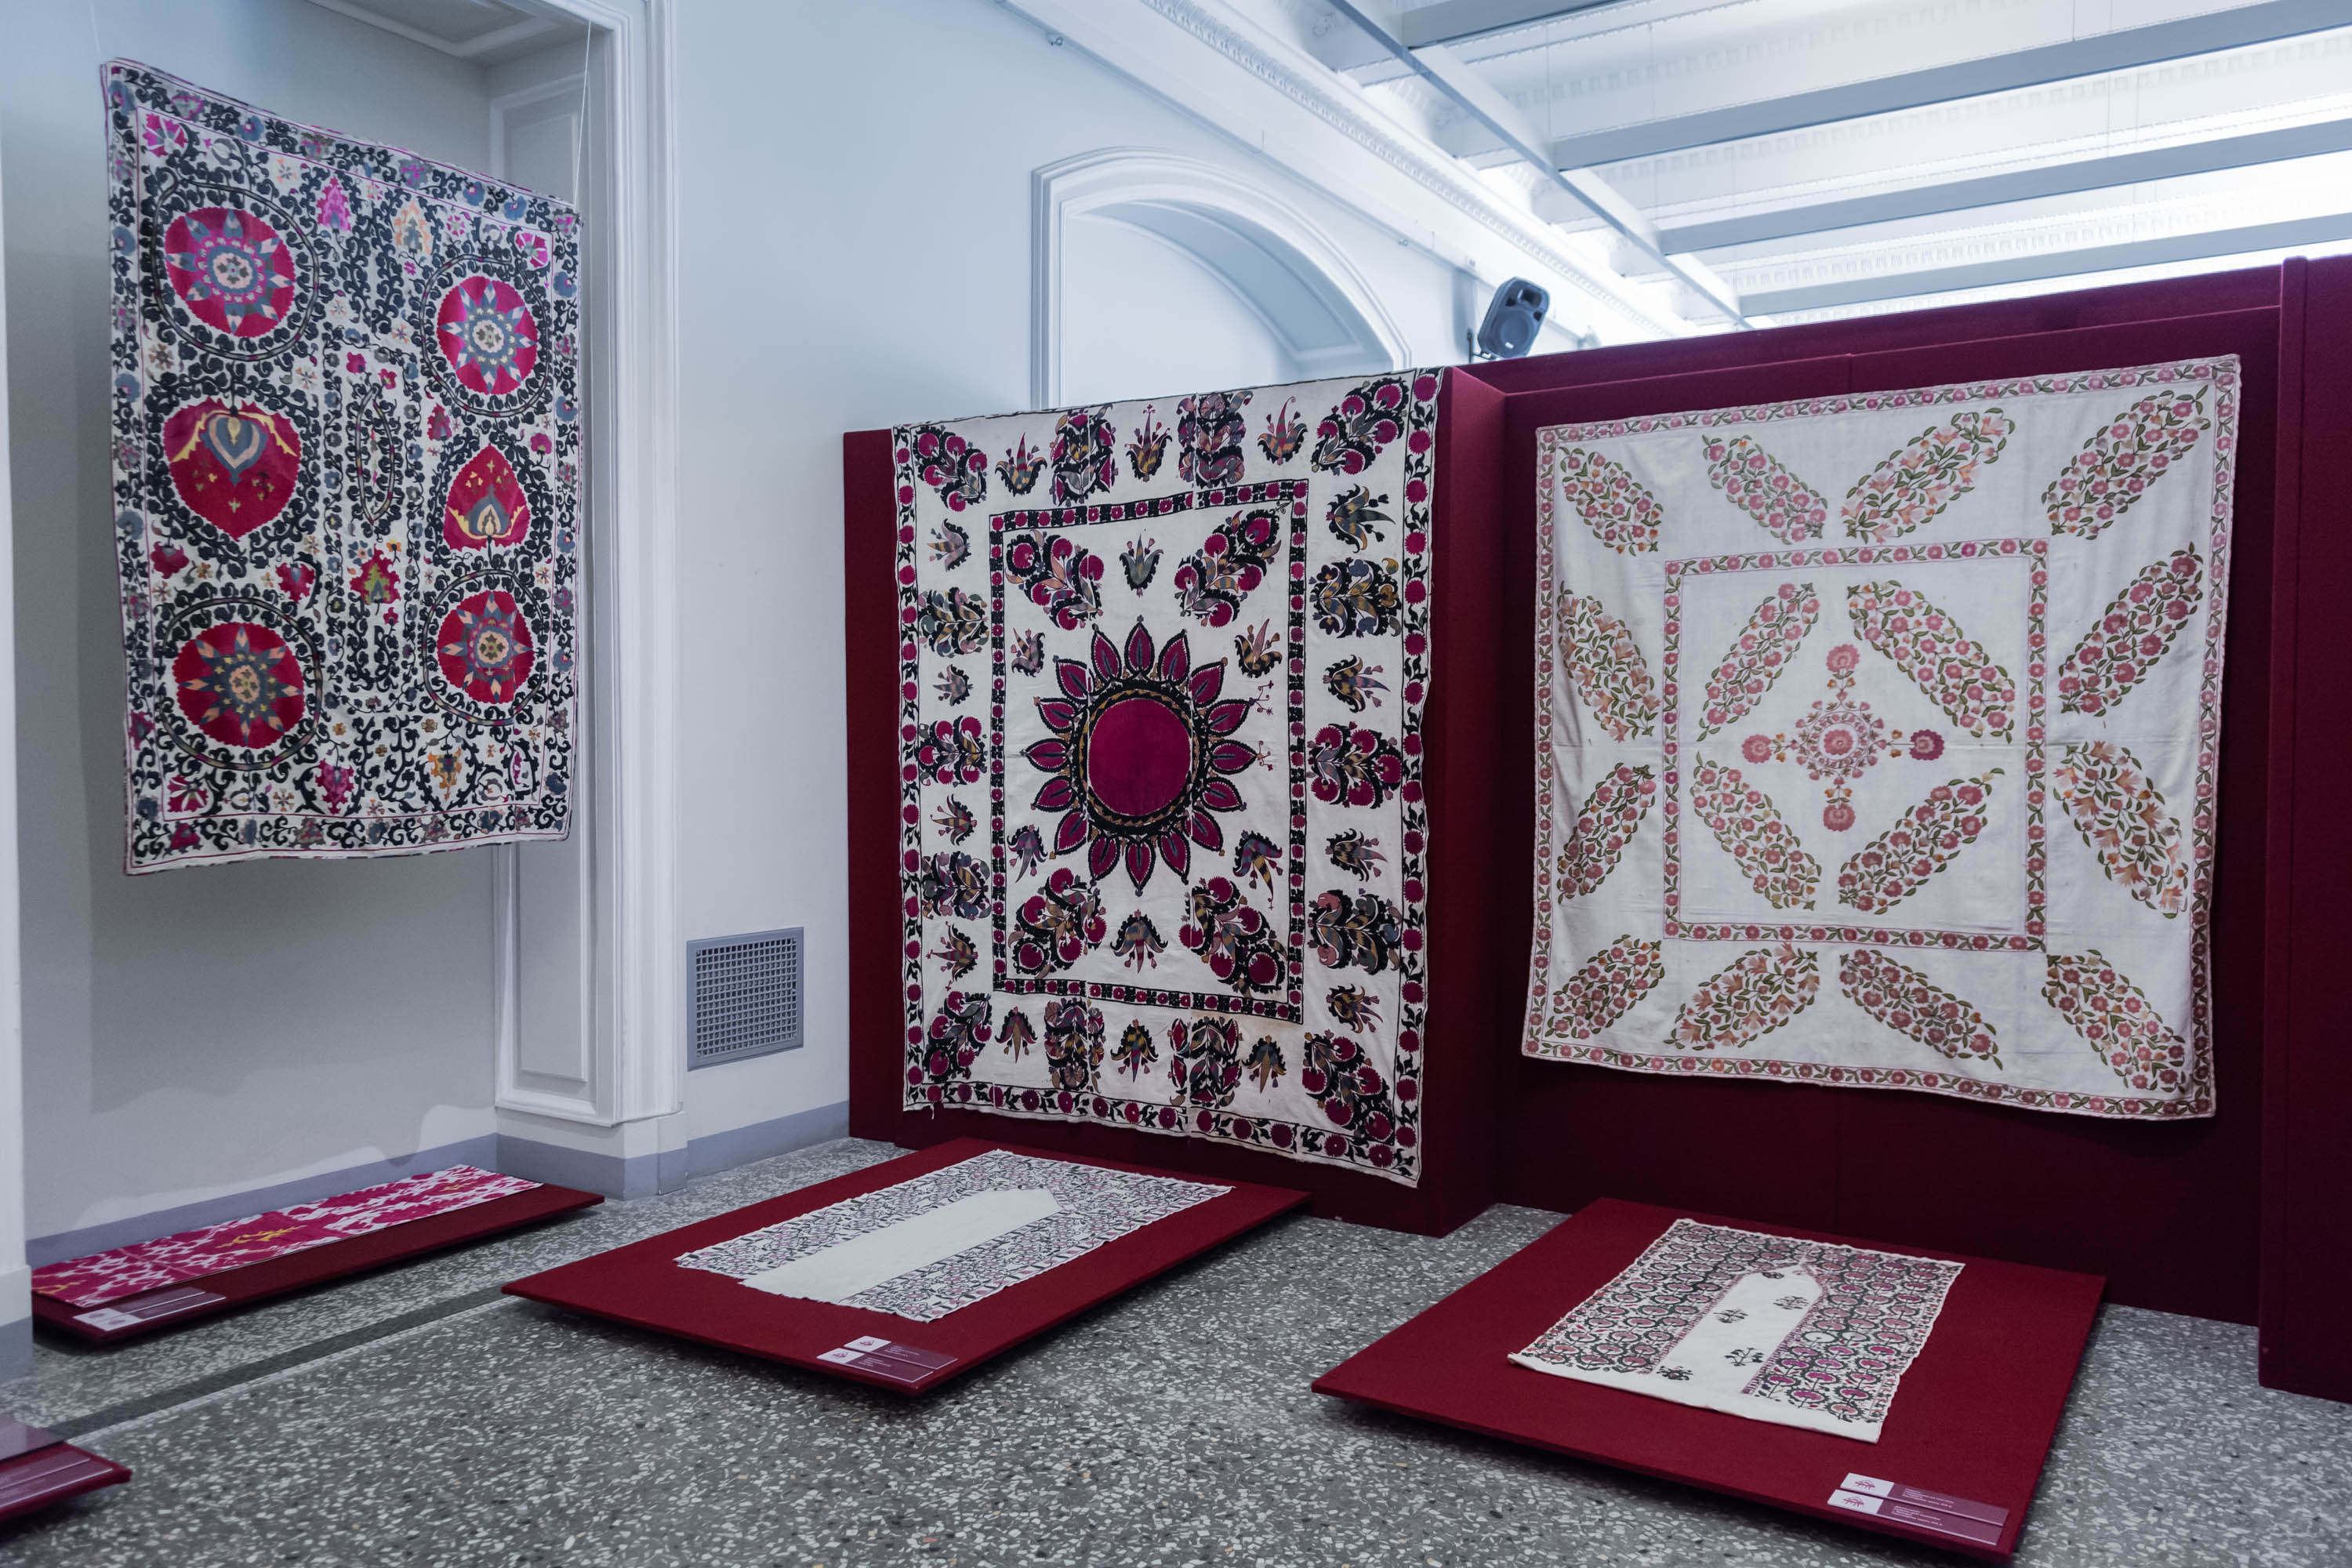 Шелковые нити Узбекистана — традиционные вышивки и ткани10